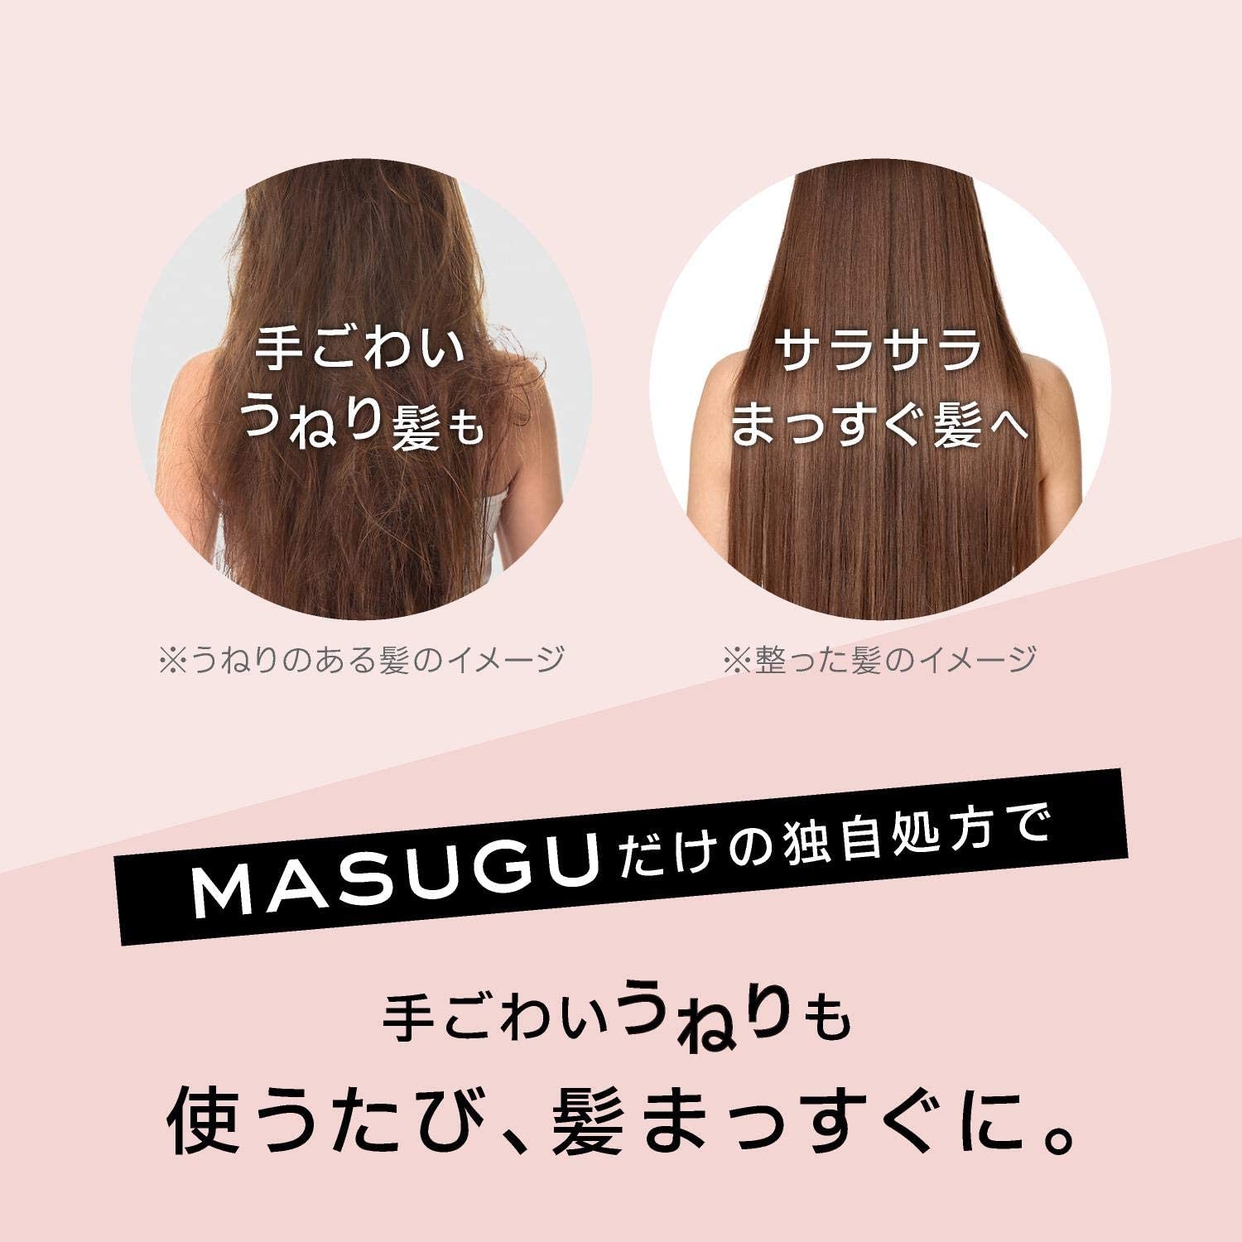 masugu(マッスグ) トリートメントの商品画像6 